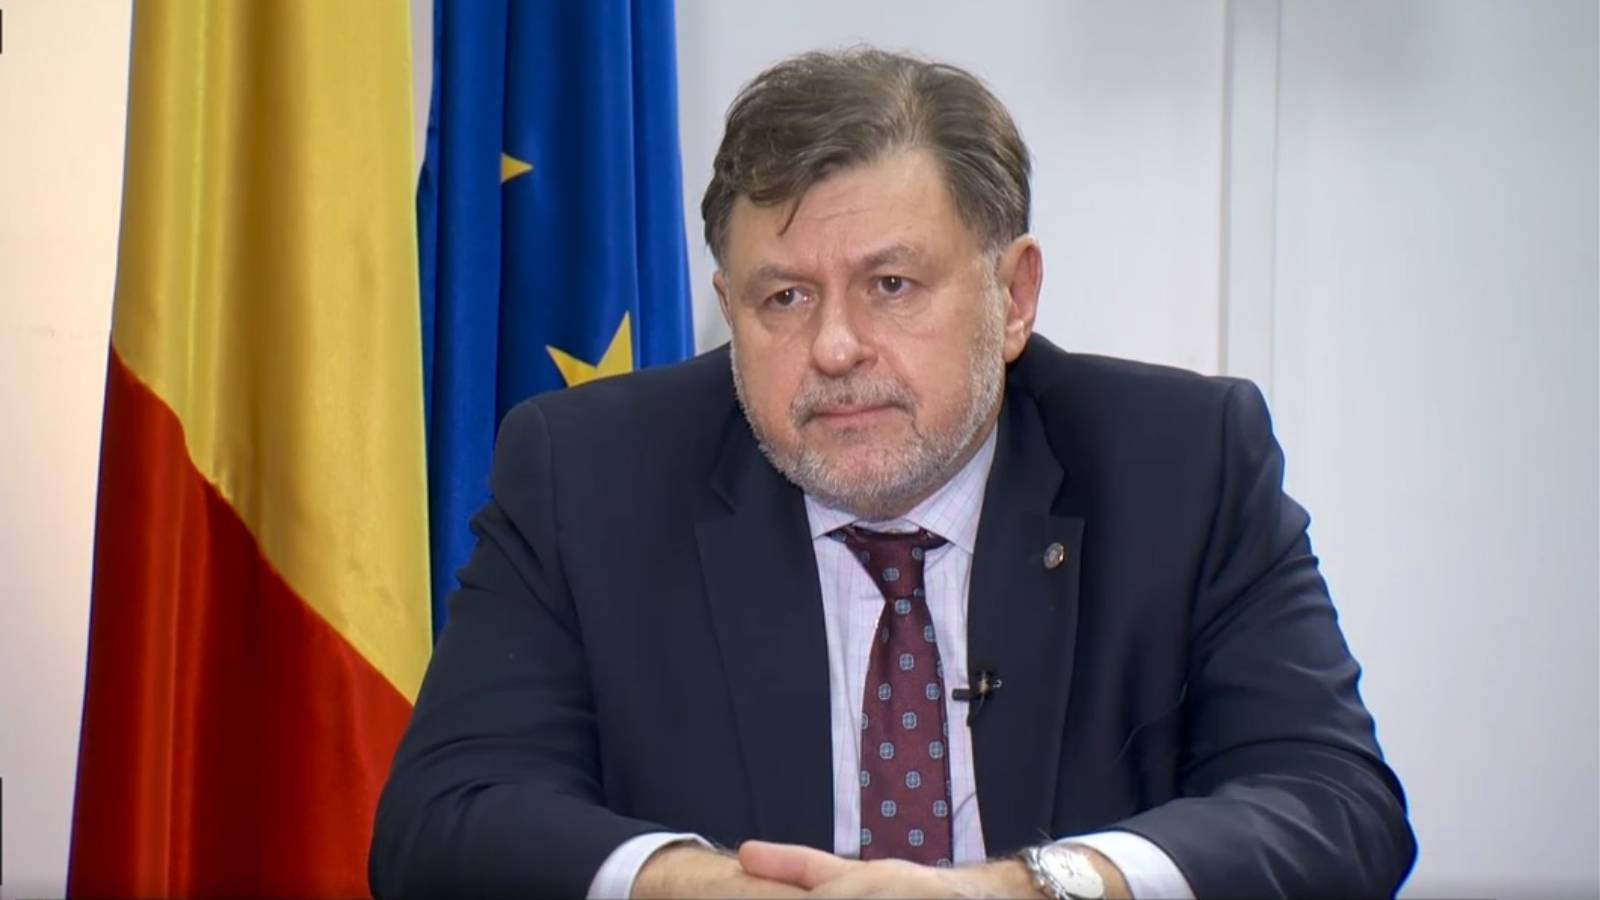 Der Gesundheitsminister hat den Rumänen in letzter Minute wichtige Maßnahmen angekündigt